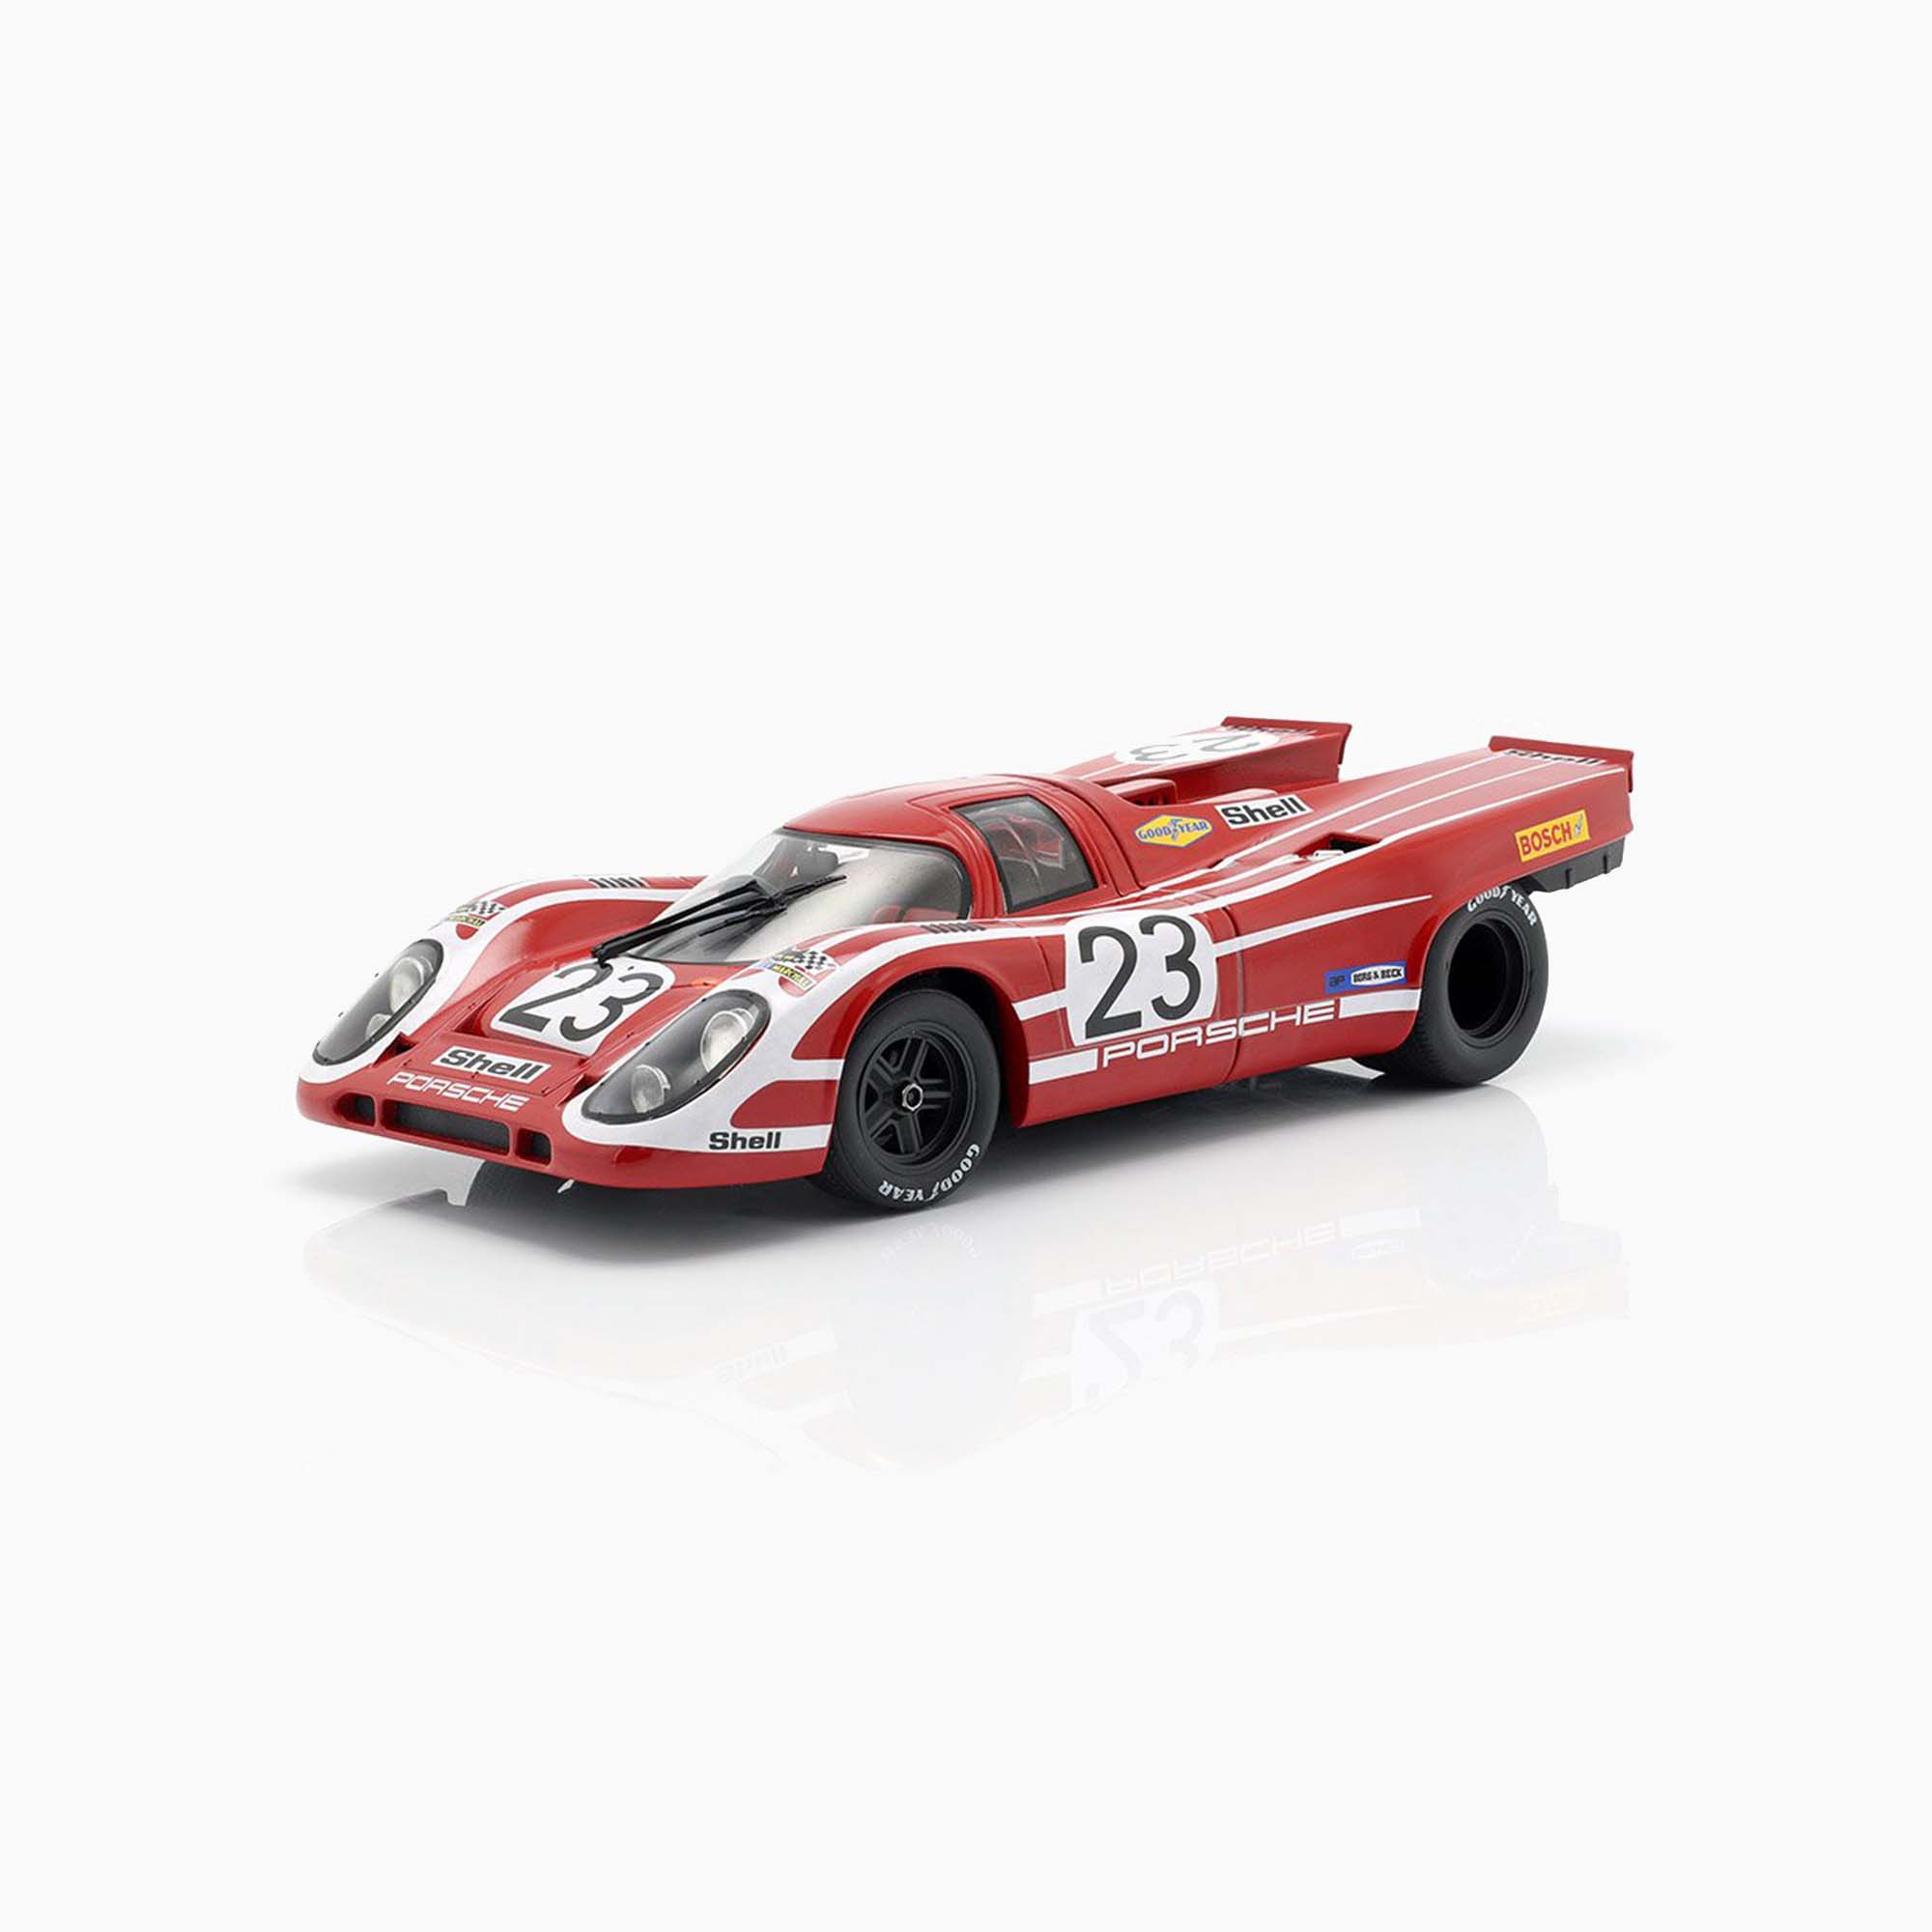 Porsche 917 K No.23 Winner 24 H Le Mans 1970 | 1:18 Scale Model-1:18 Scale Model-Spark Models-gpx-store